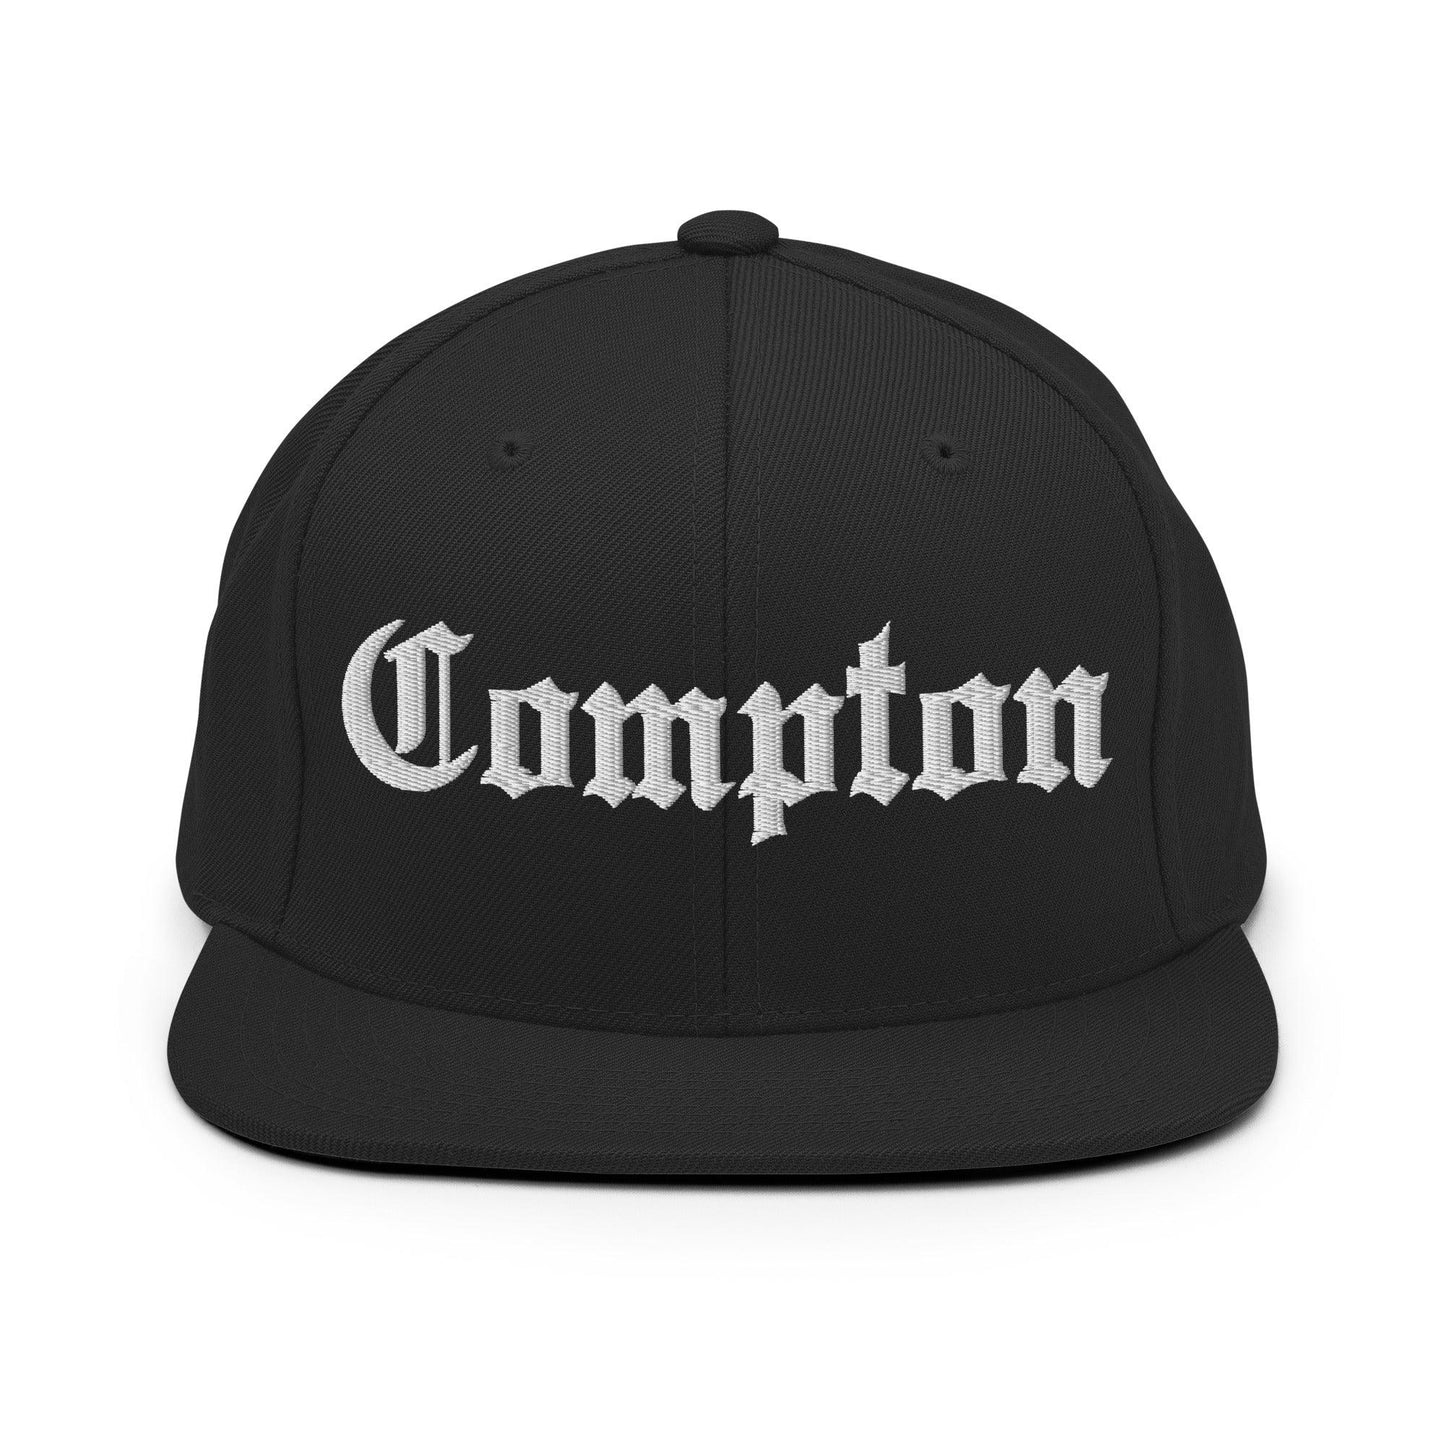 Compton OG Old English Snapback Hat Black